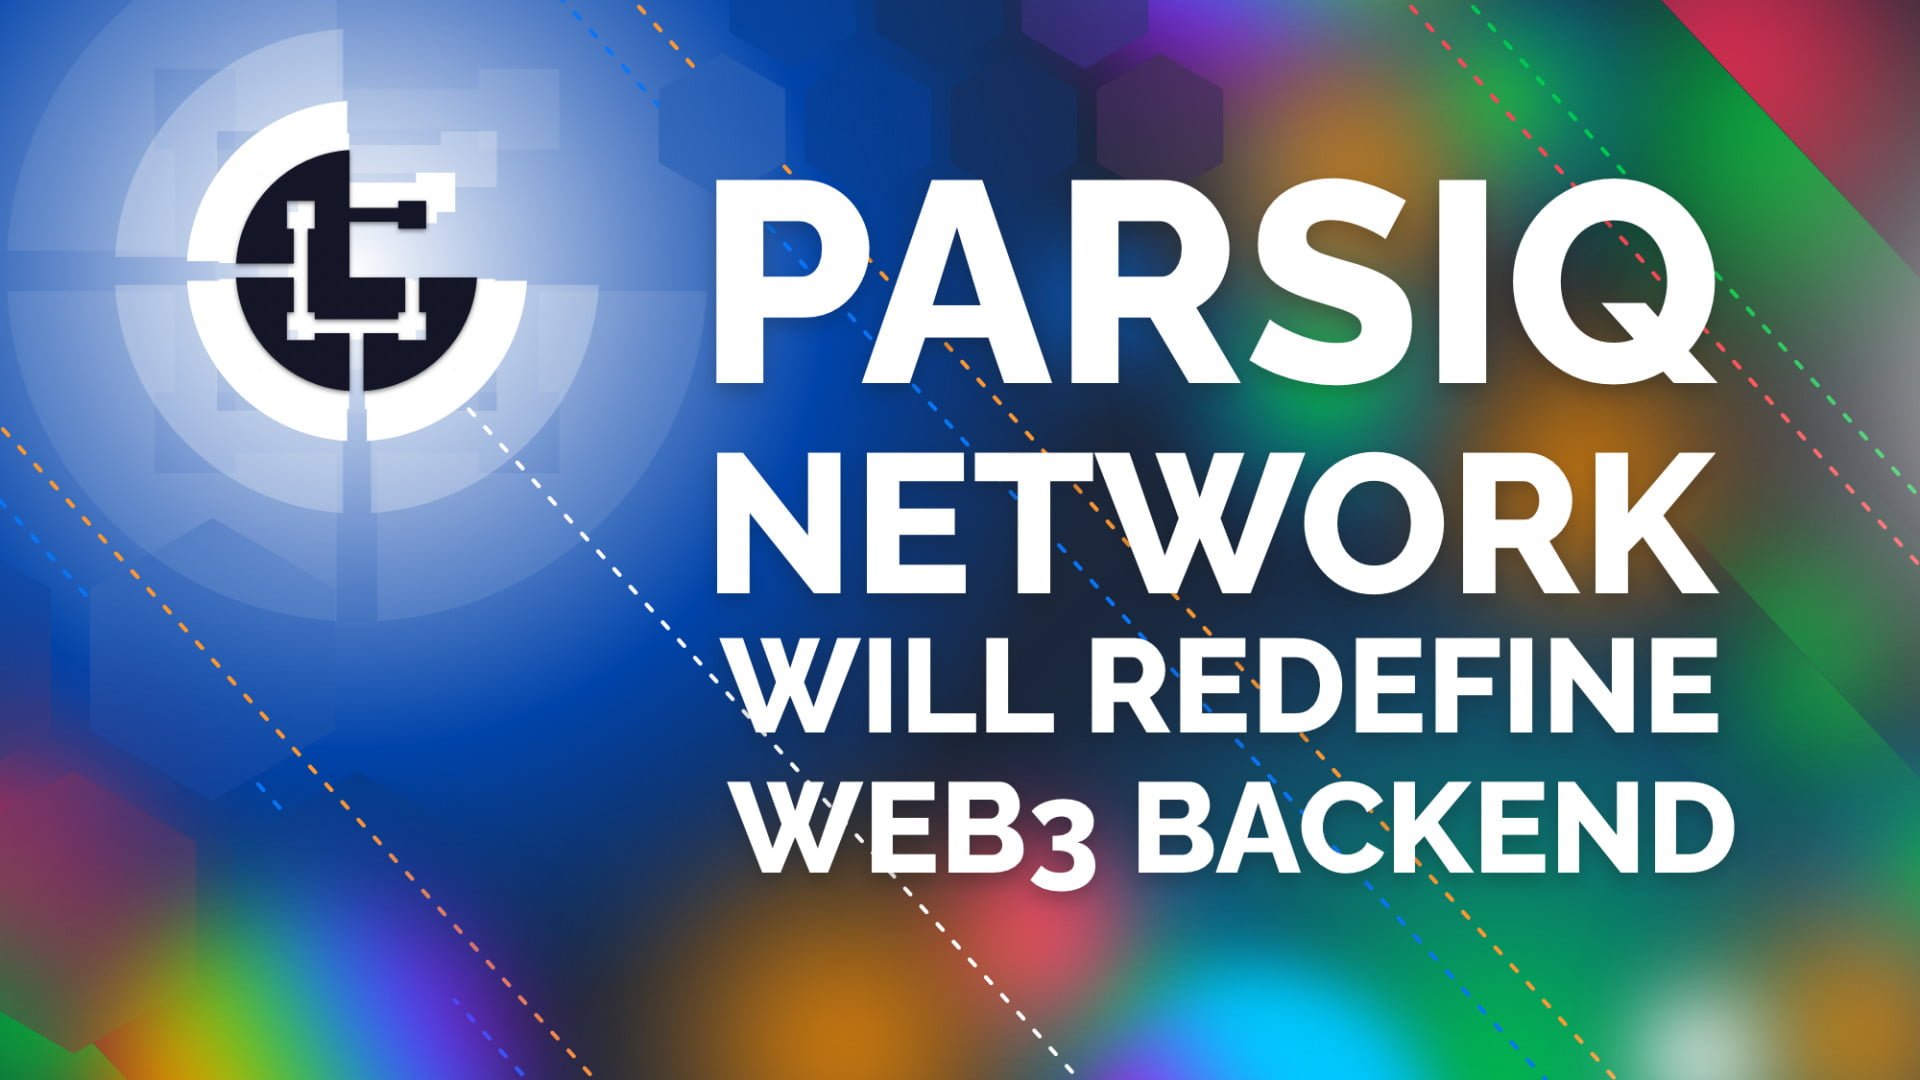 PARSIQ Network will Redefine Web3 Backend Infrastructure 10